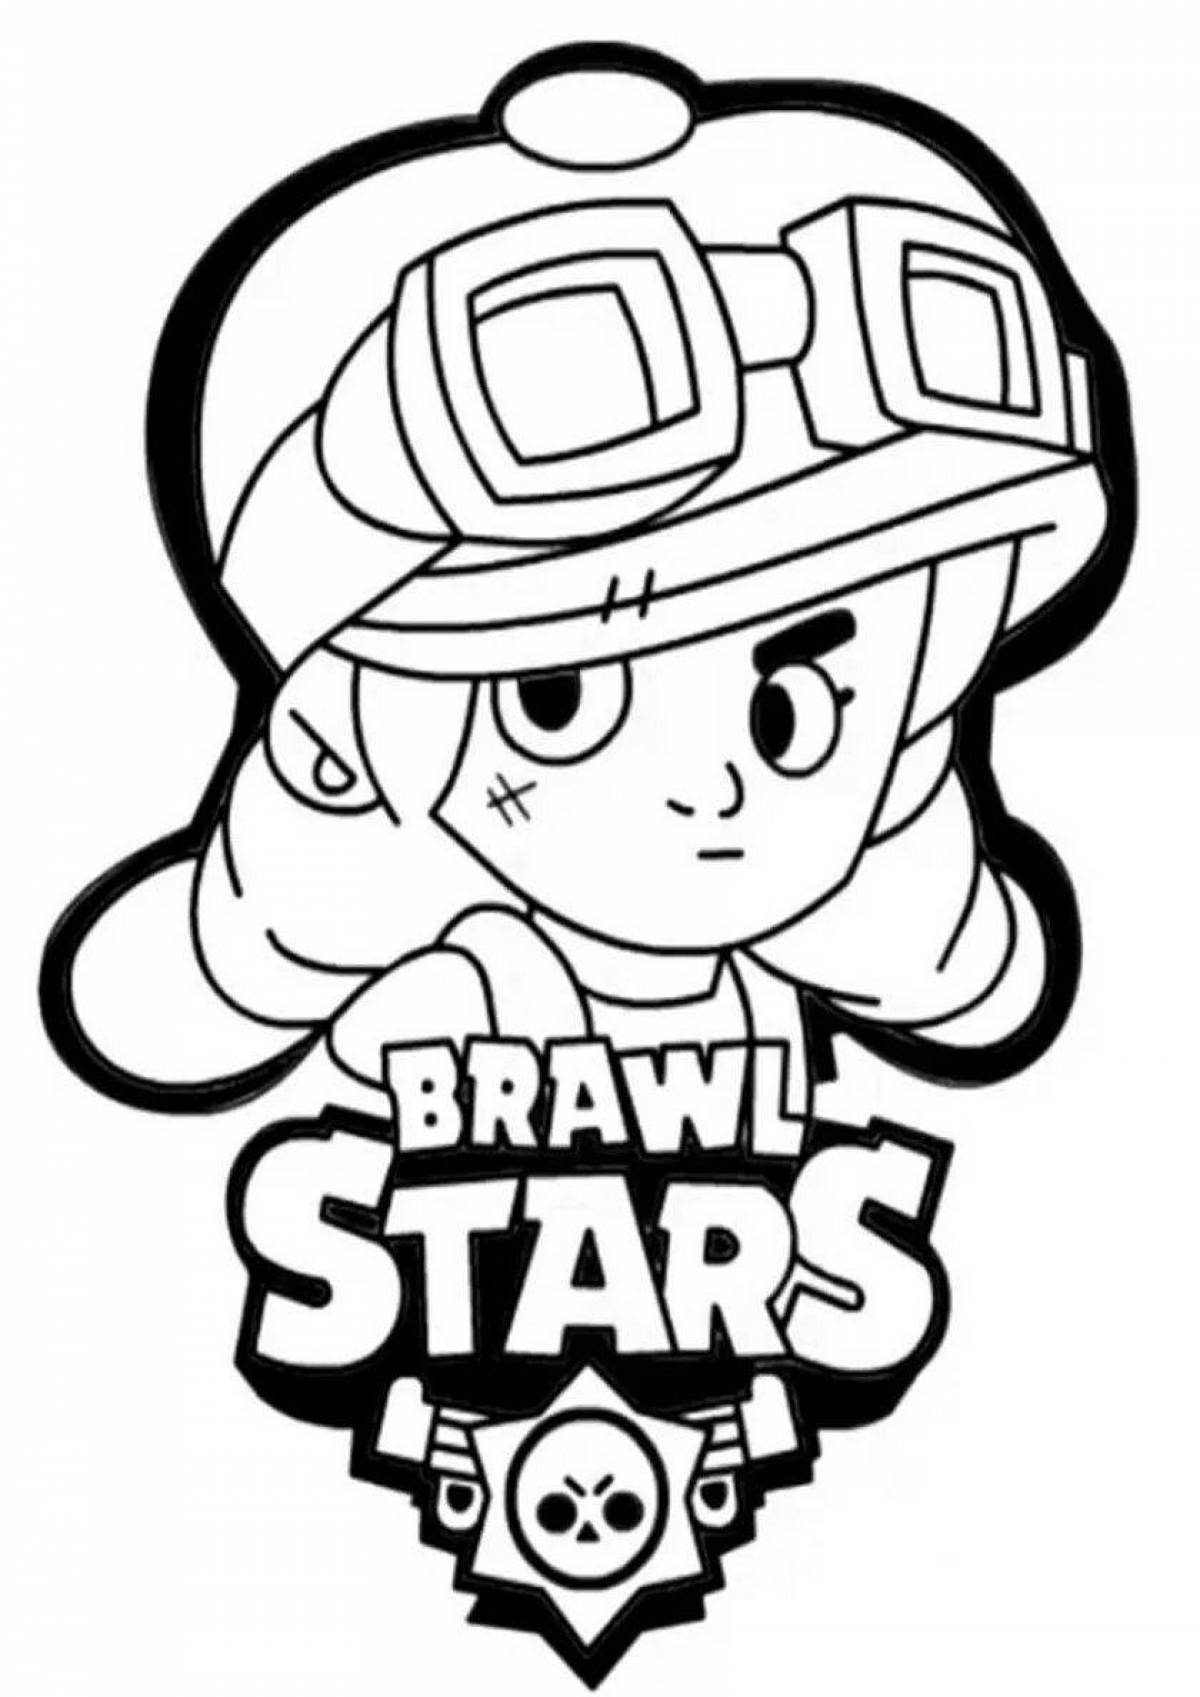 Bravo stars poco fun coloring page